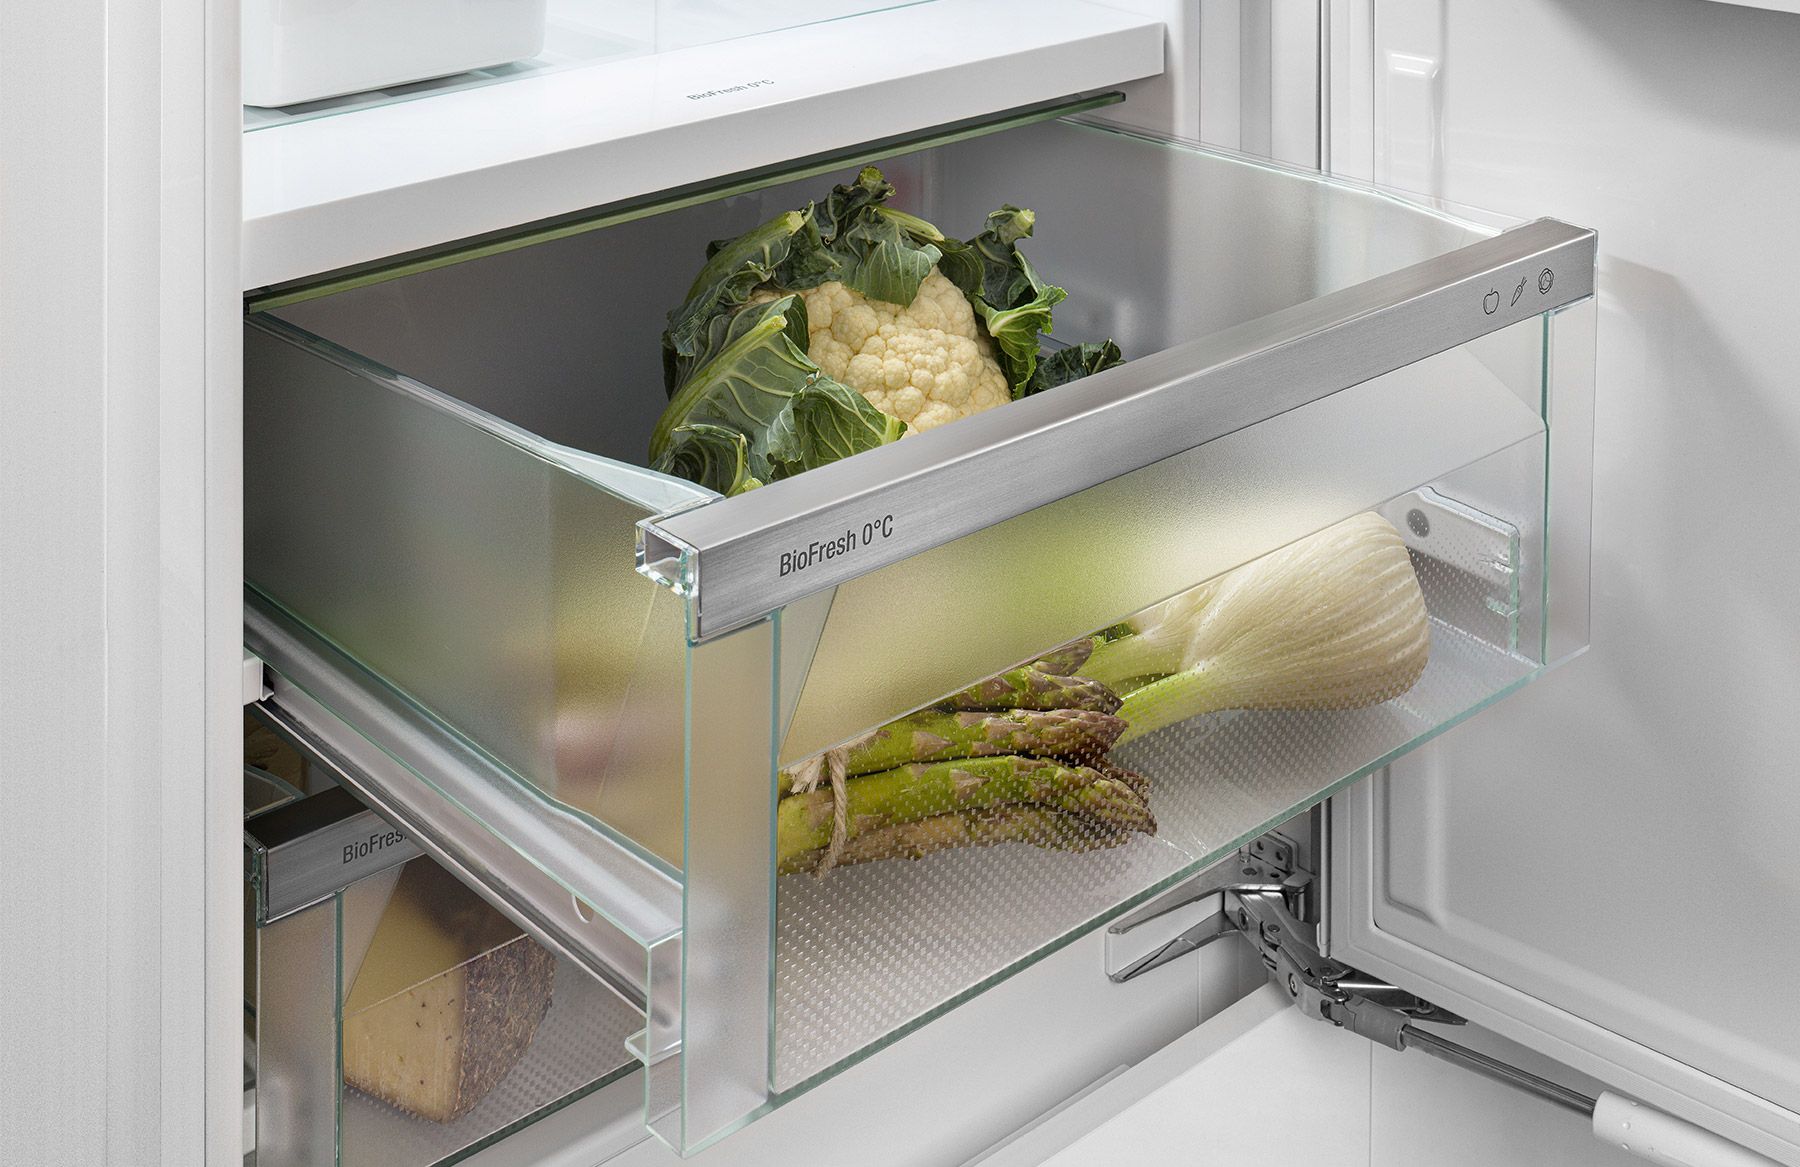 De voordelen van BioFresh koelkasten - Van Manen Keukens